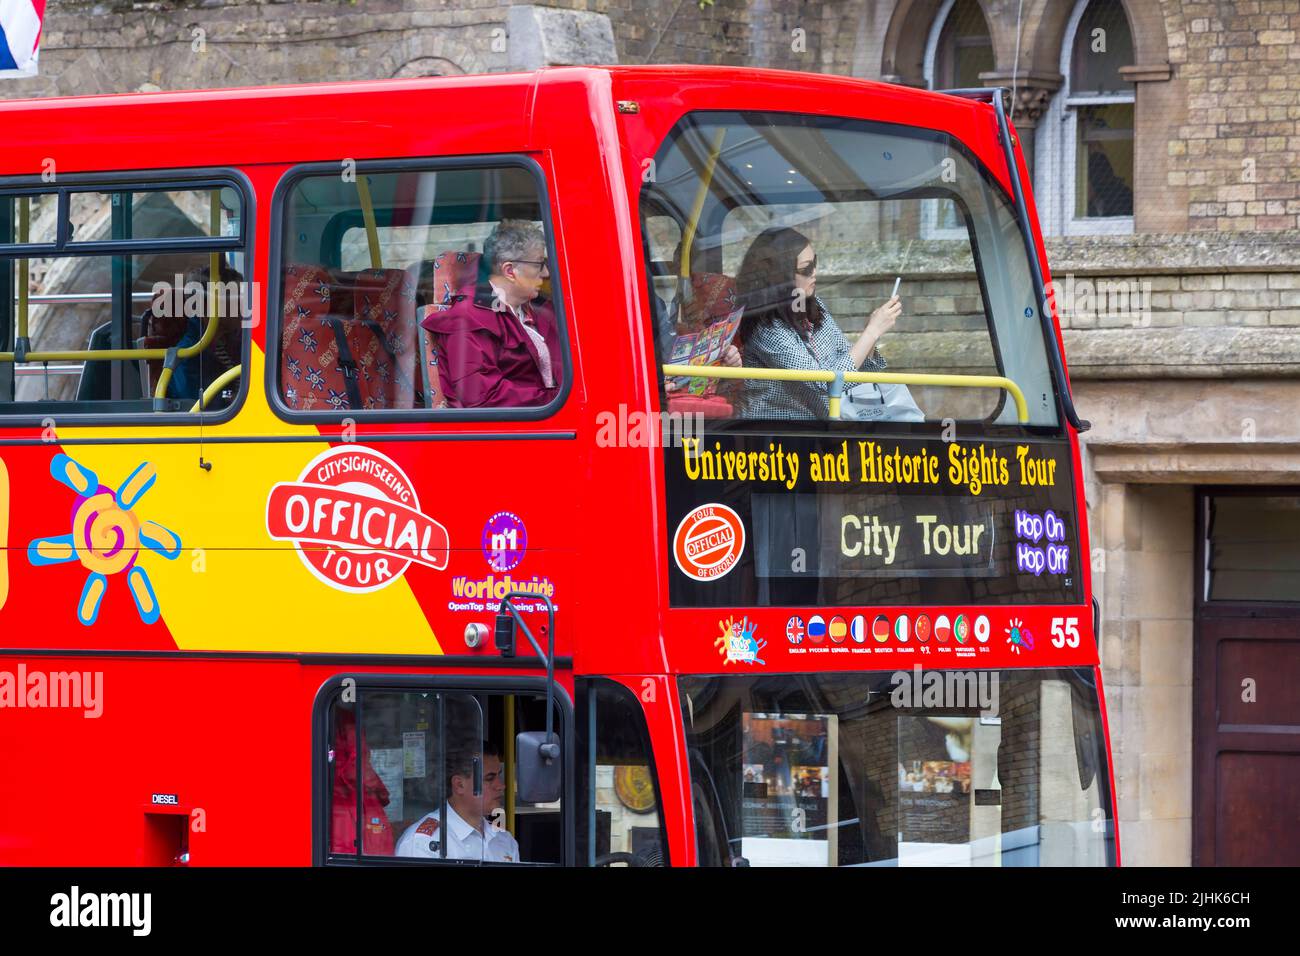 Tour durch die Universität und historische Sehenswürdigkeiten City Tour Bus in Oxford, Oxfordshire UK an einem regnerischen Tag im August Stockfoto